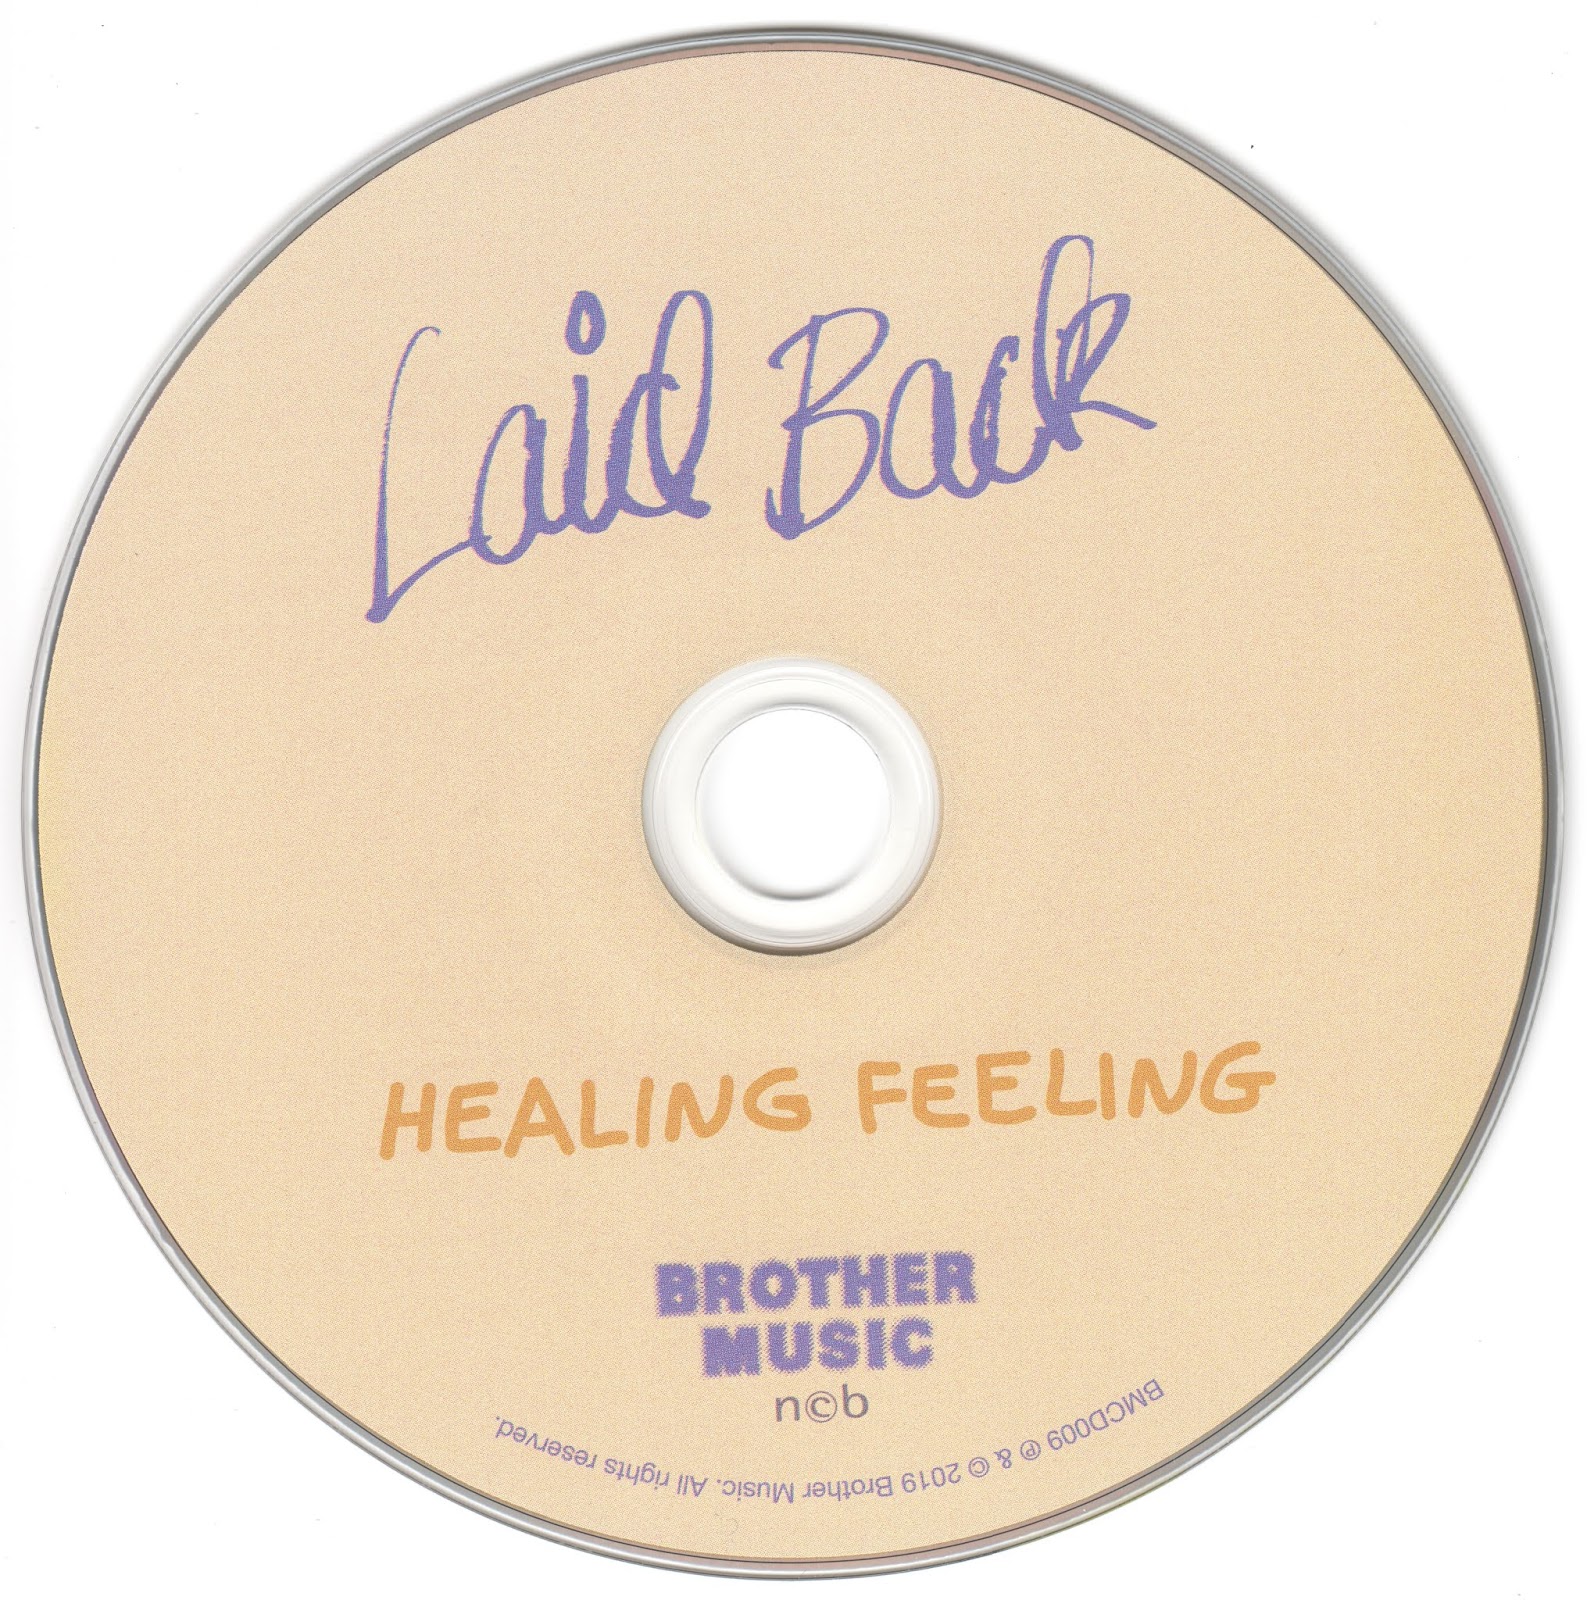 Tracking feeling. Laid back. Laid back laid back 1981. 2019: Healing feeling. Группа laid back альбомы.